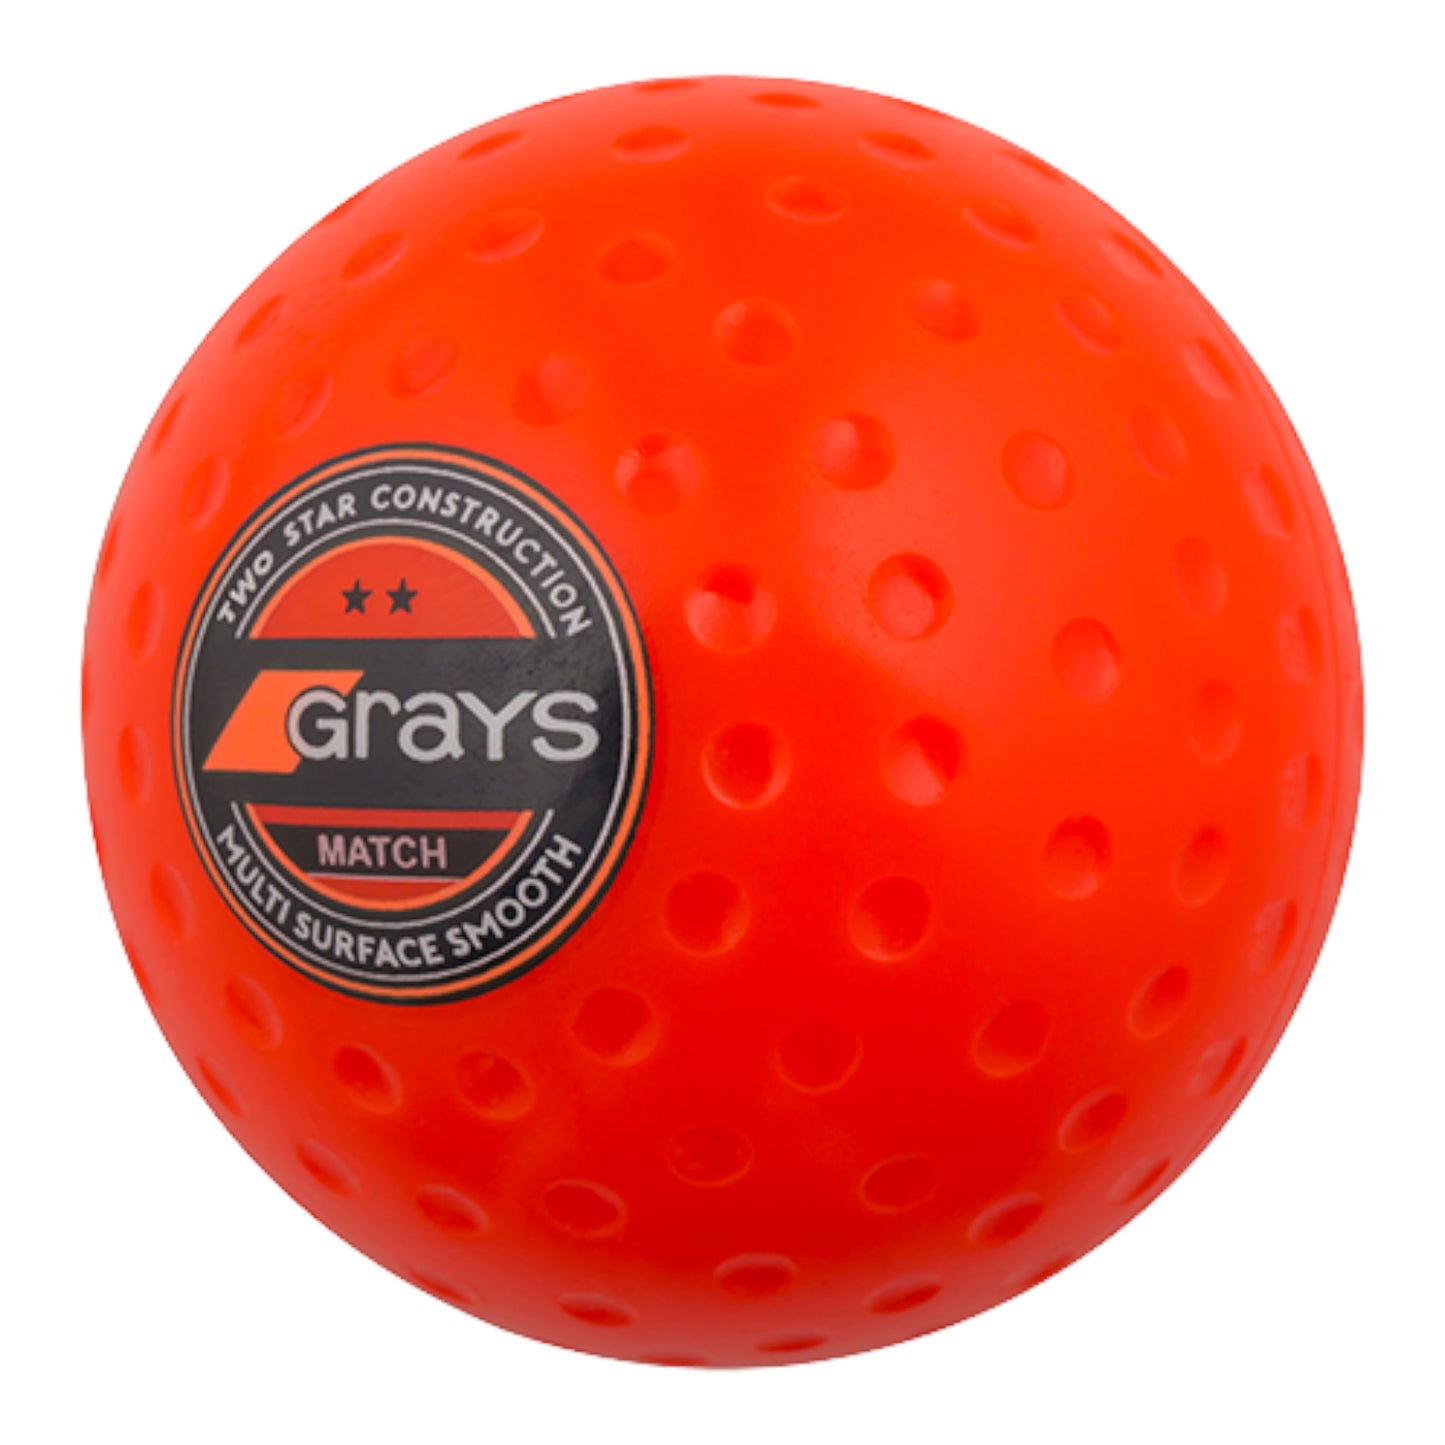 Grays Match Ball box of 6 at 5.5oz